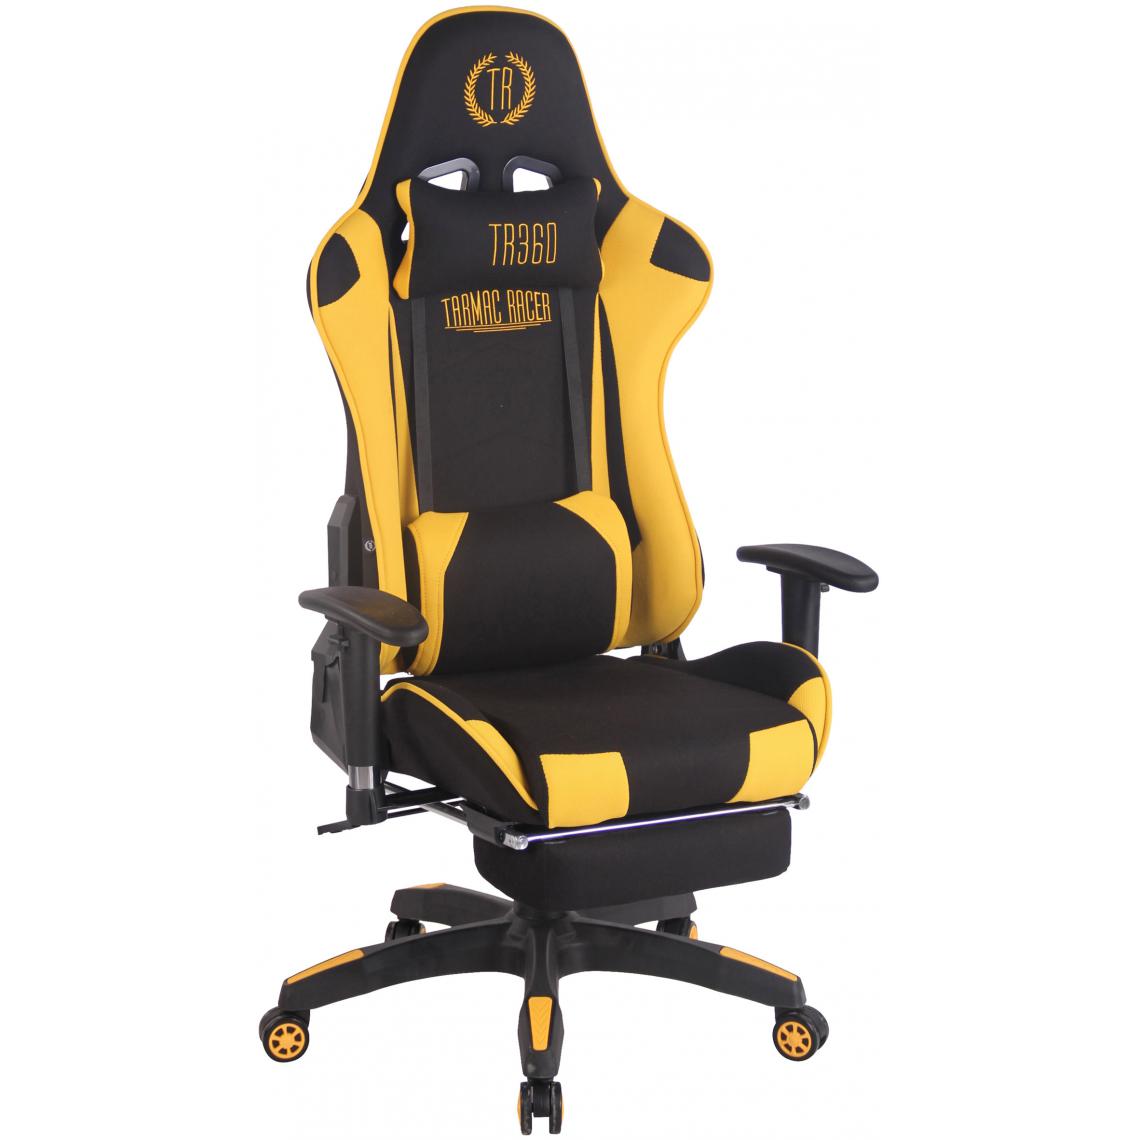 Icaverne - Moderne Chaise de bureau categorie Luanda tissu Turbo avec repose-pieds couleur noir jaune - Chaises